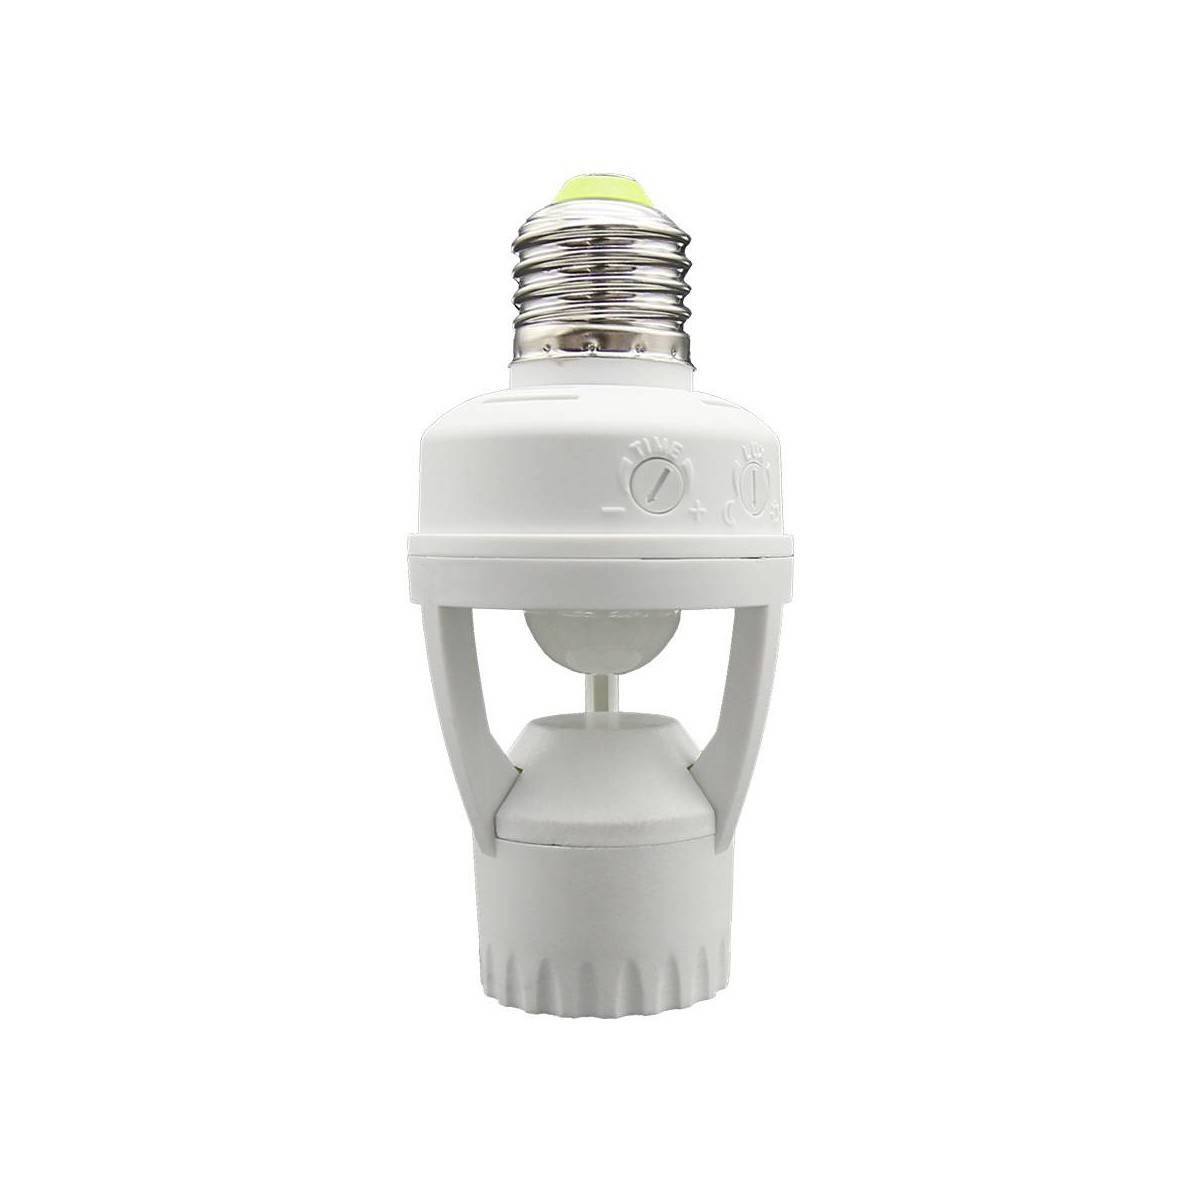 Adapter für E27-Glühbirne mit PIR-Bewegungssensor kaufen